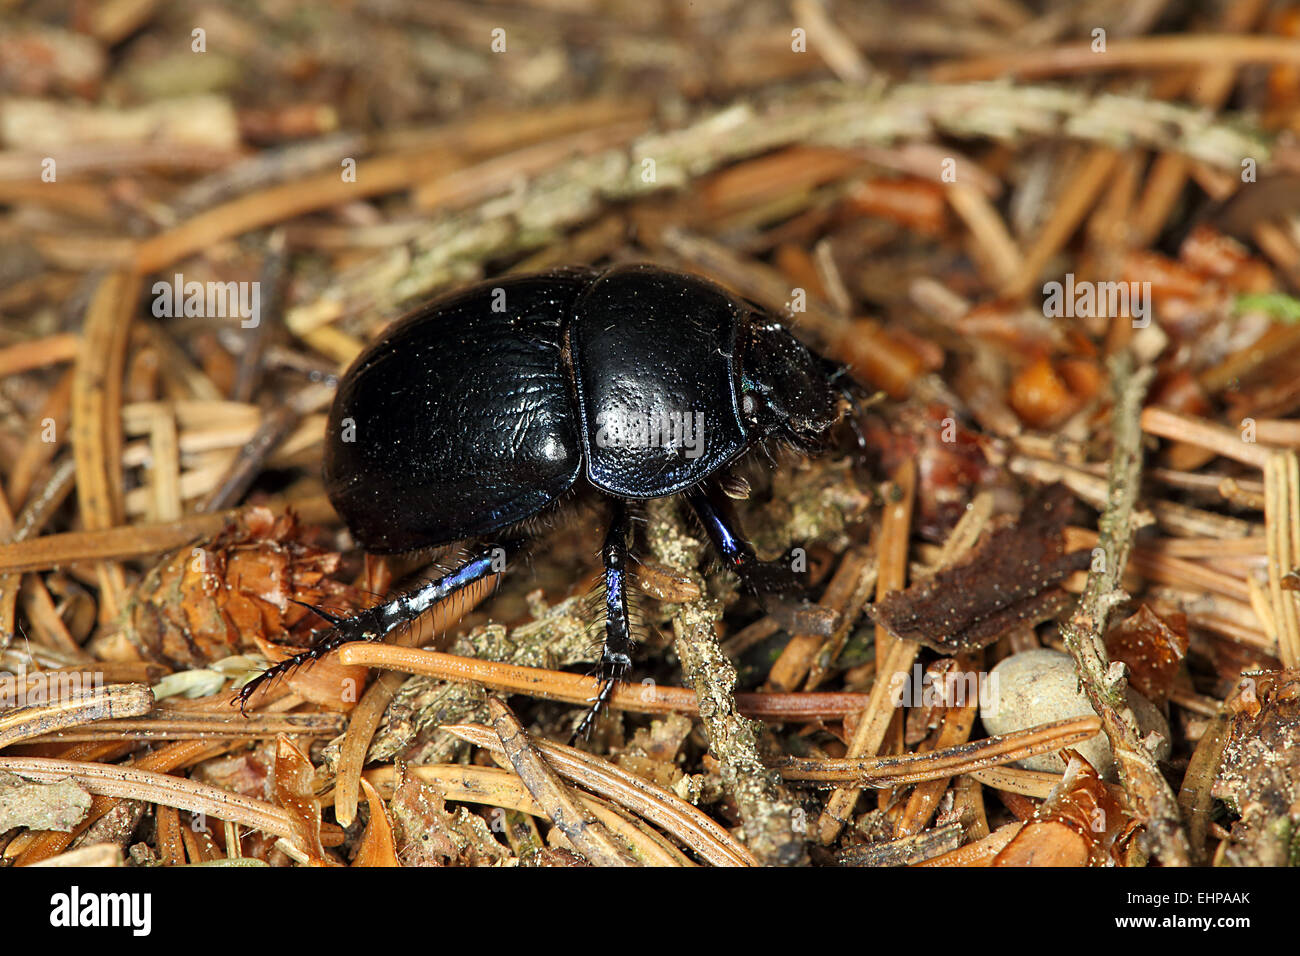 Geotrupes stercorarius, escarabajos Foto de stock